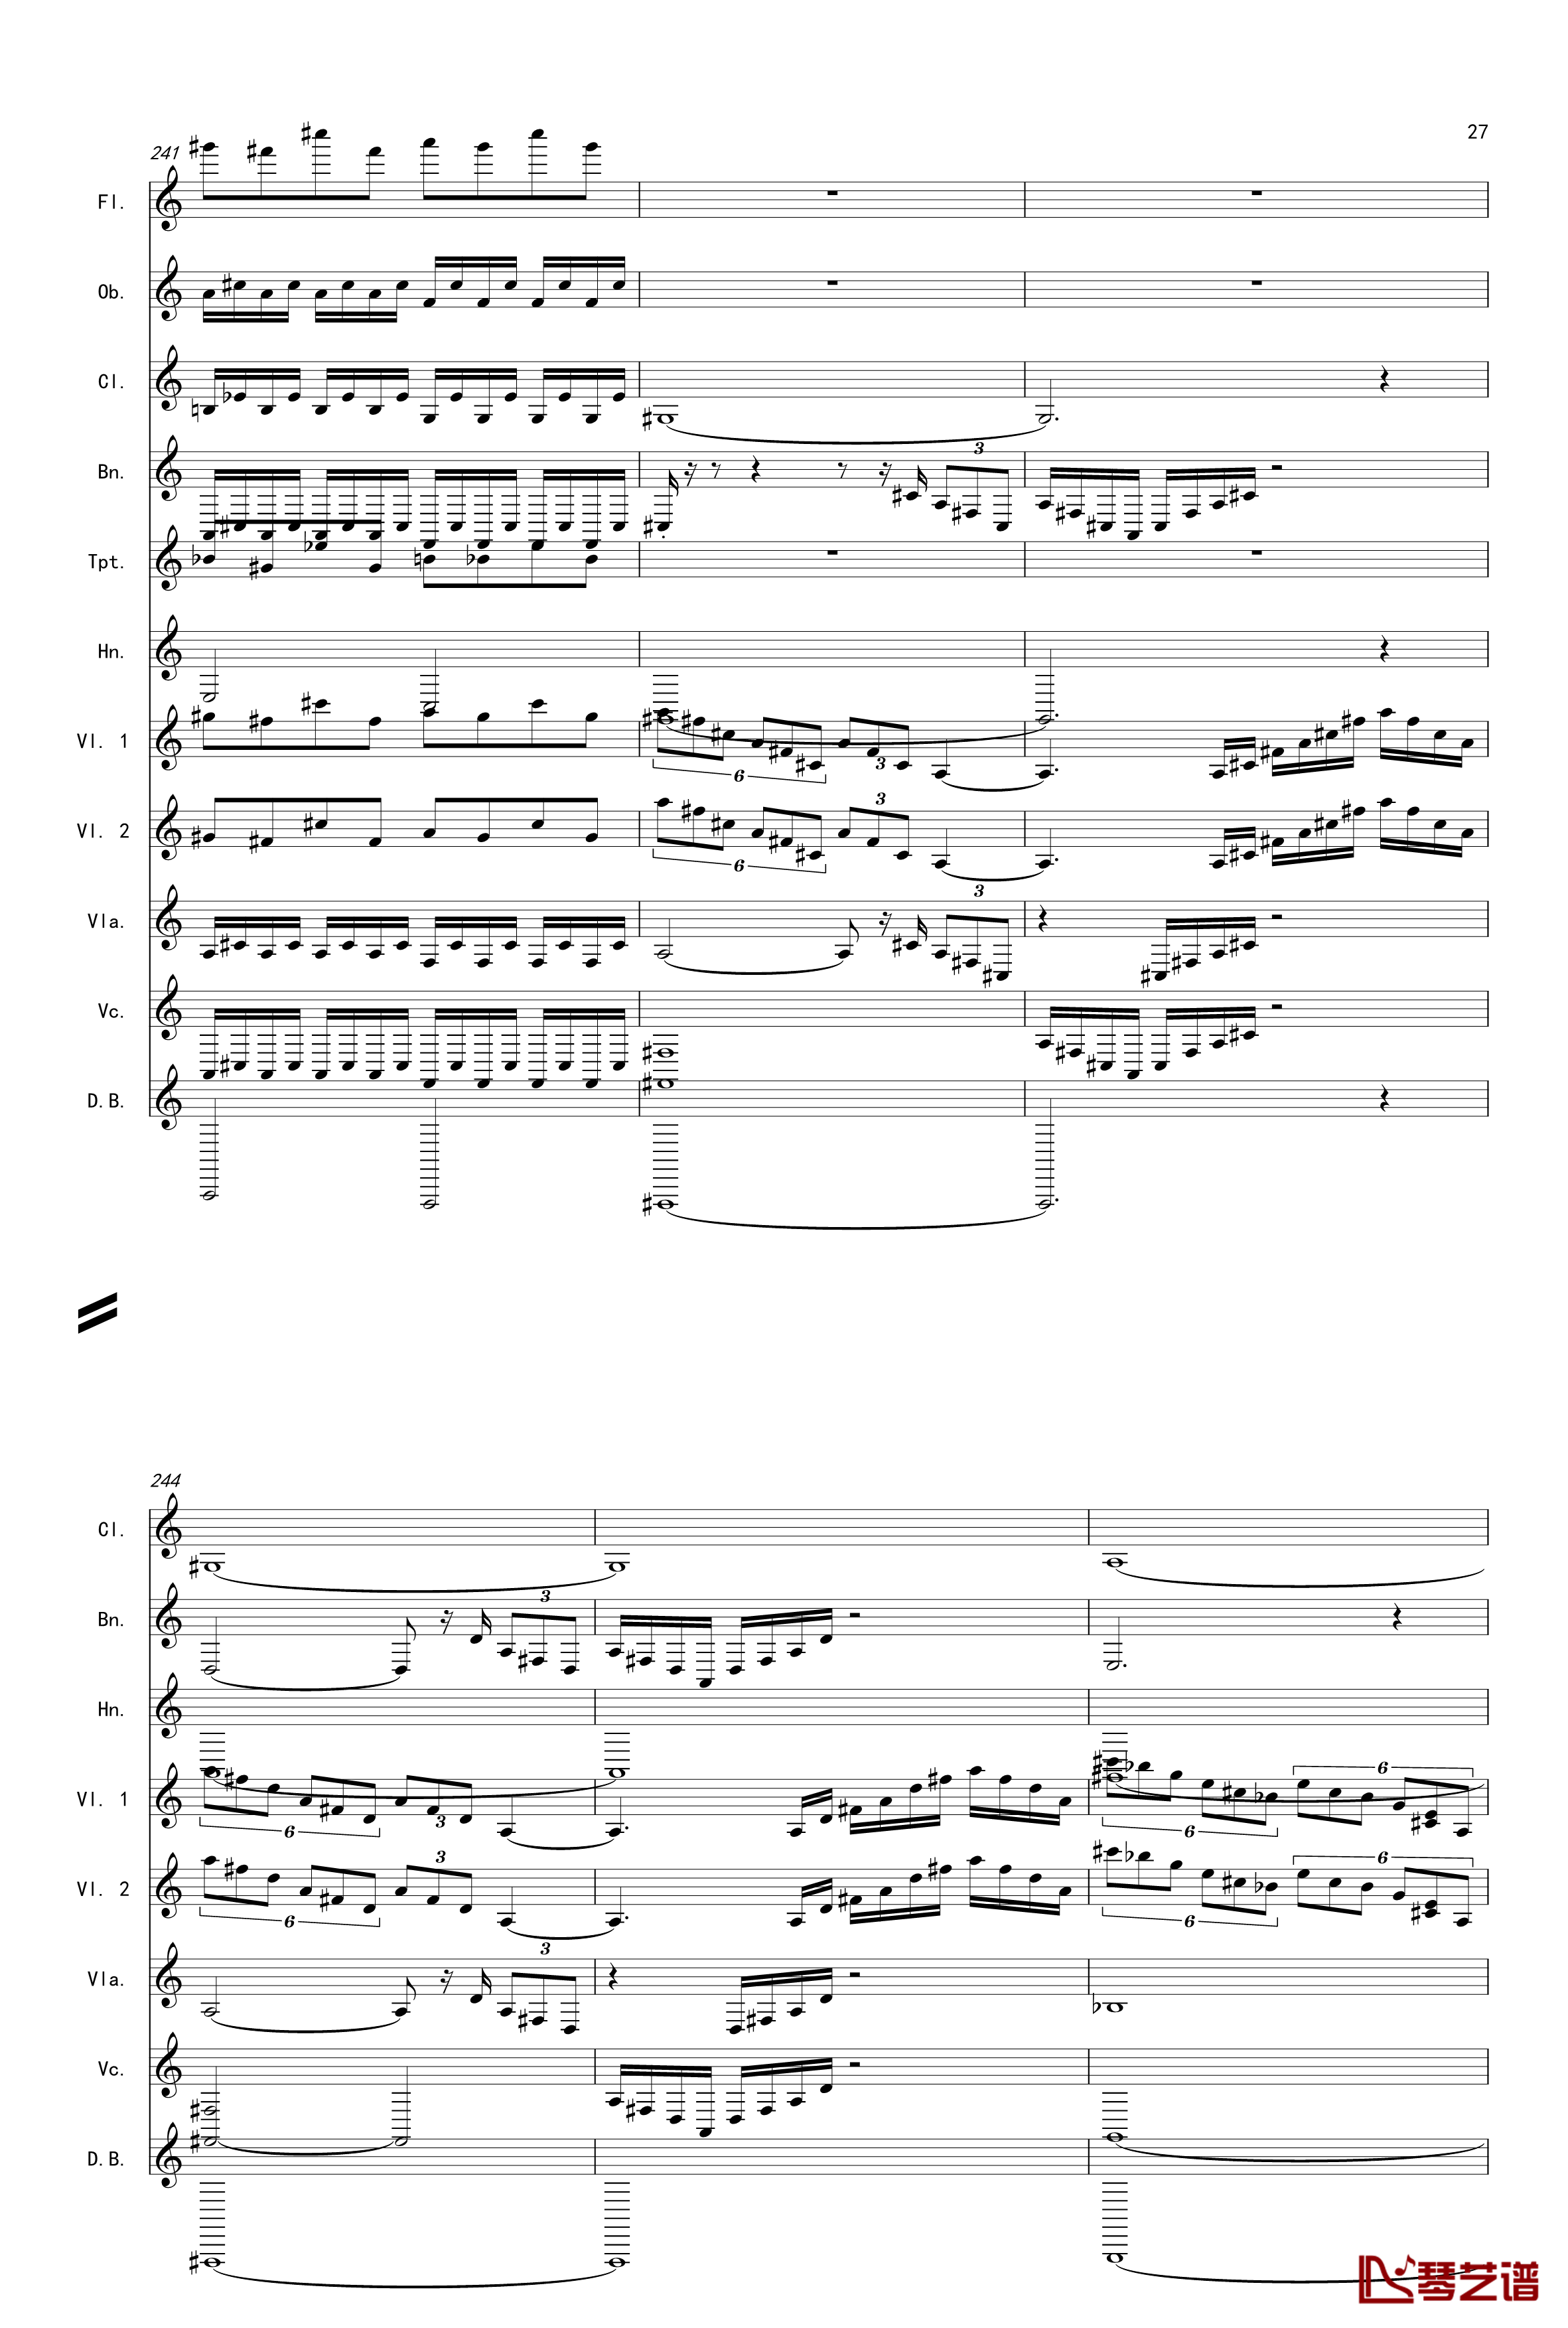 奏鸣曲之交响第14首Ⅲ钢琴谱-贝多芬-beethoven27